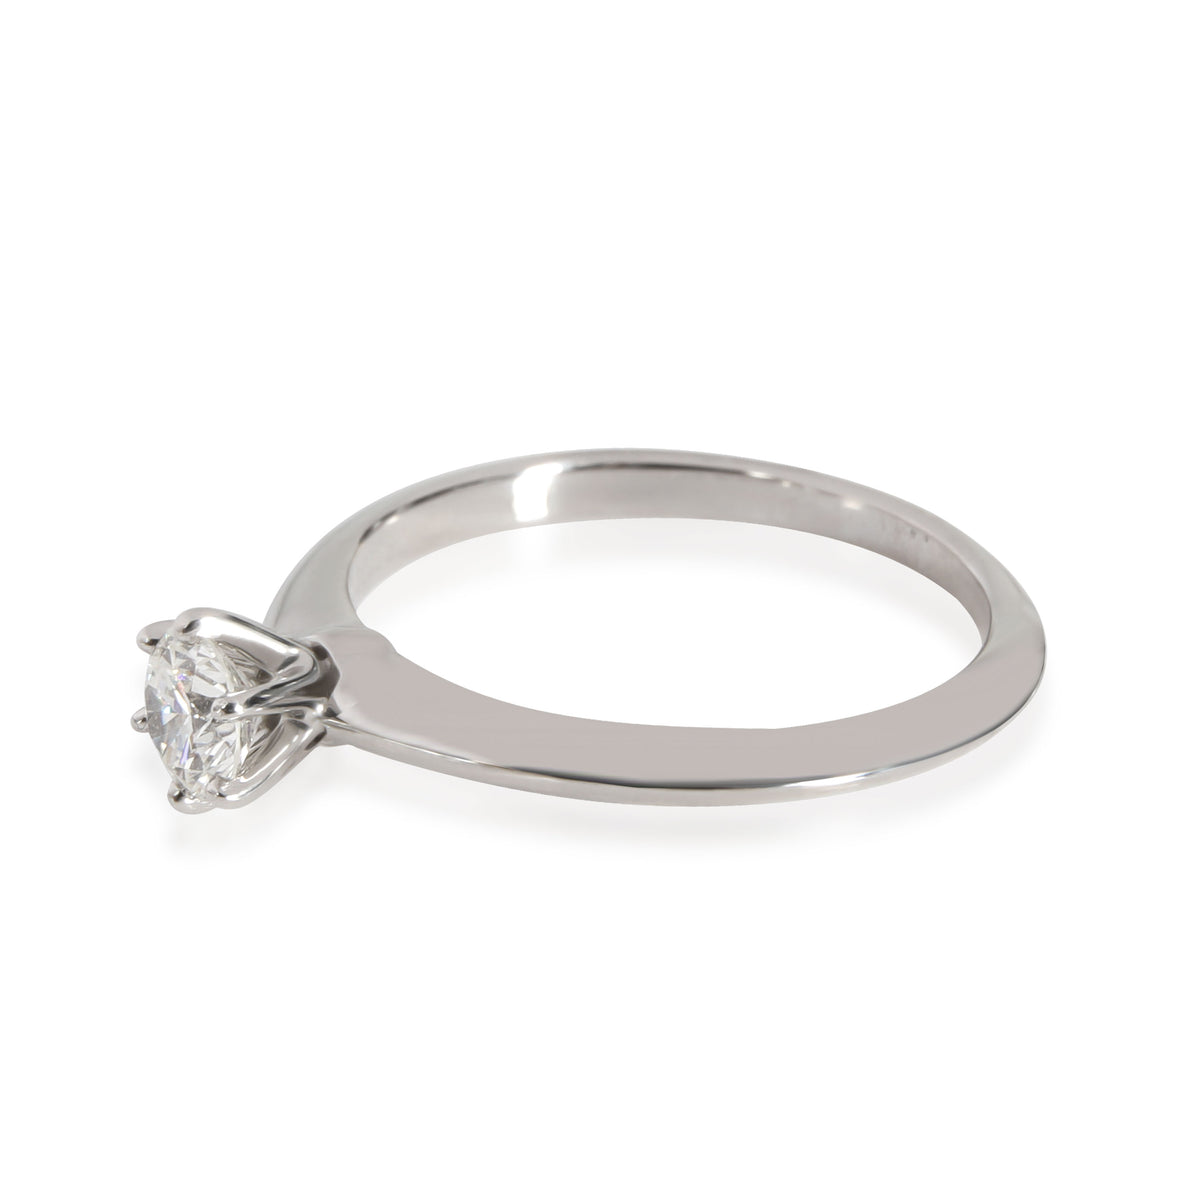 Diamond Solitaire Engagement Ring in Platinum H VS1 0.33 CTW